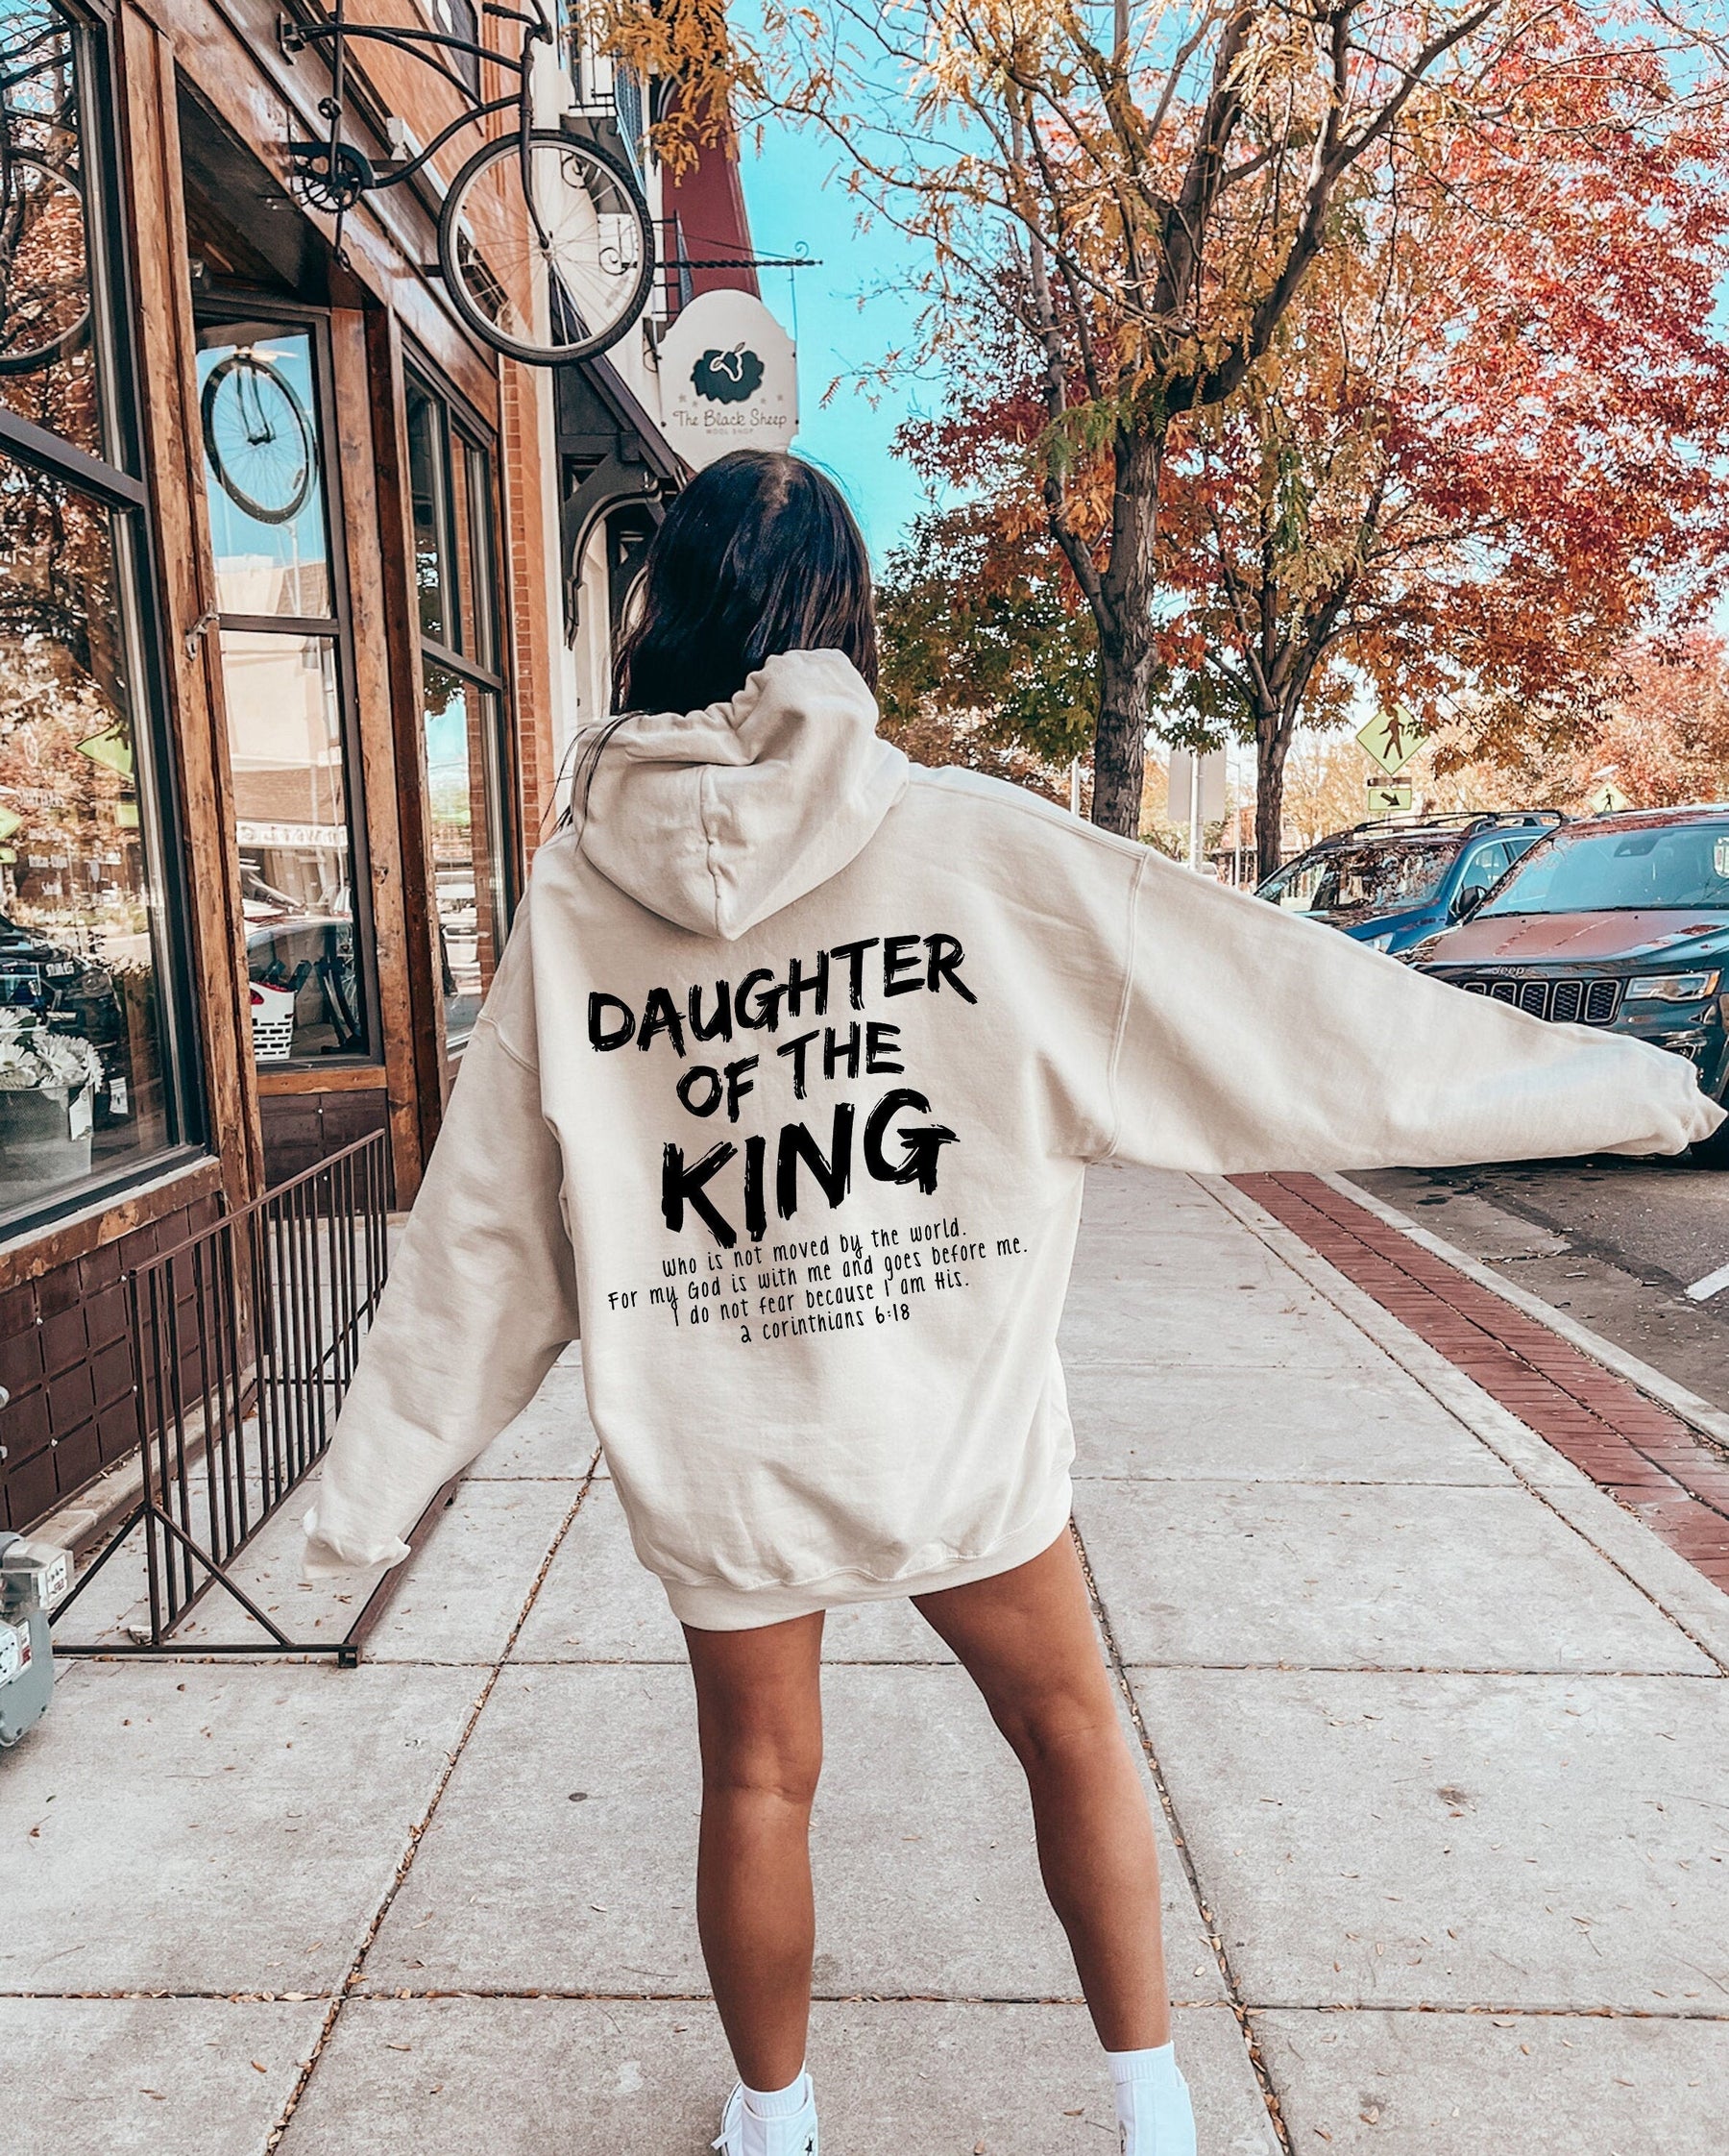 King's Daughter Christian Women's Beautiful Bible Verse Sweatshirt